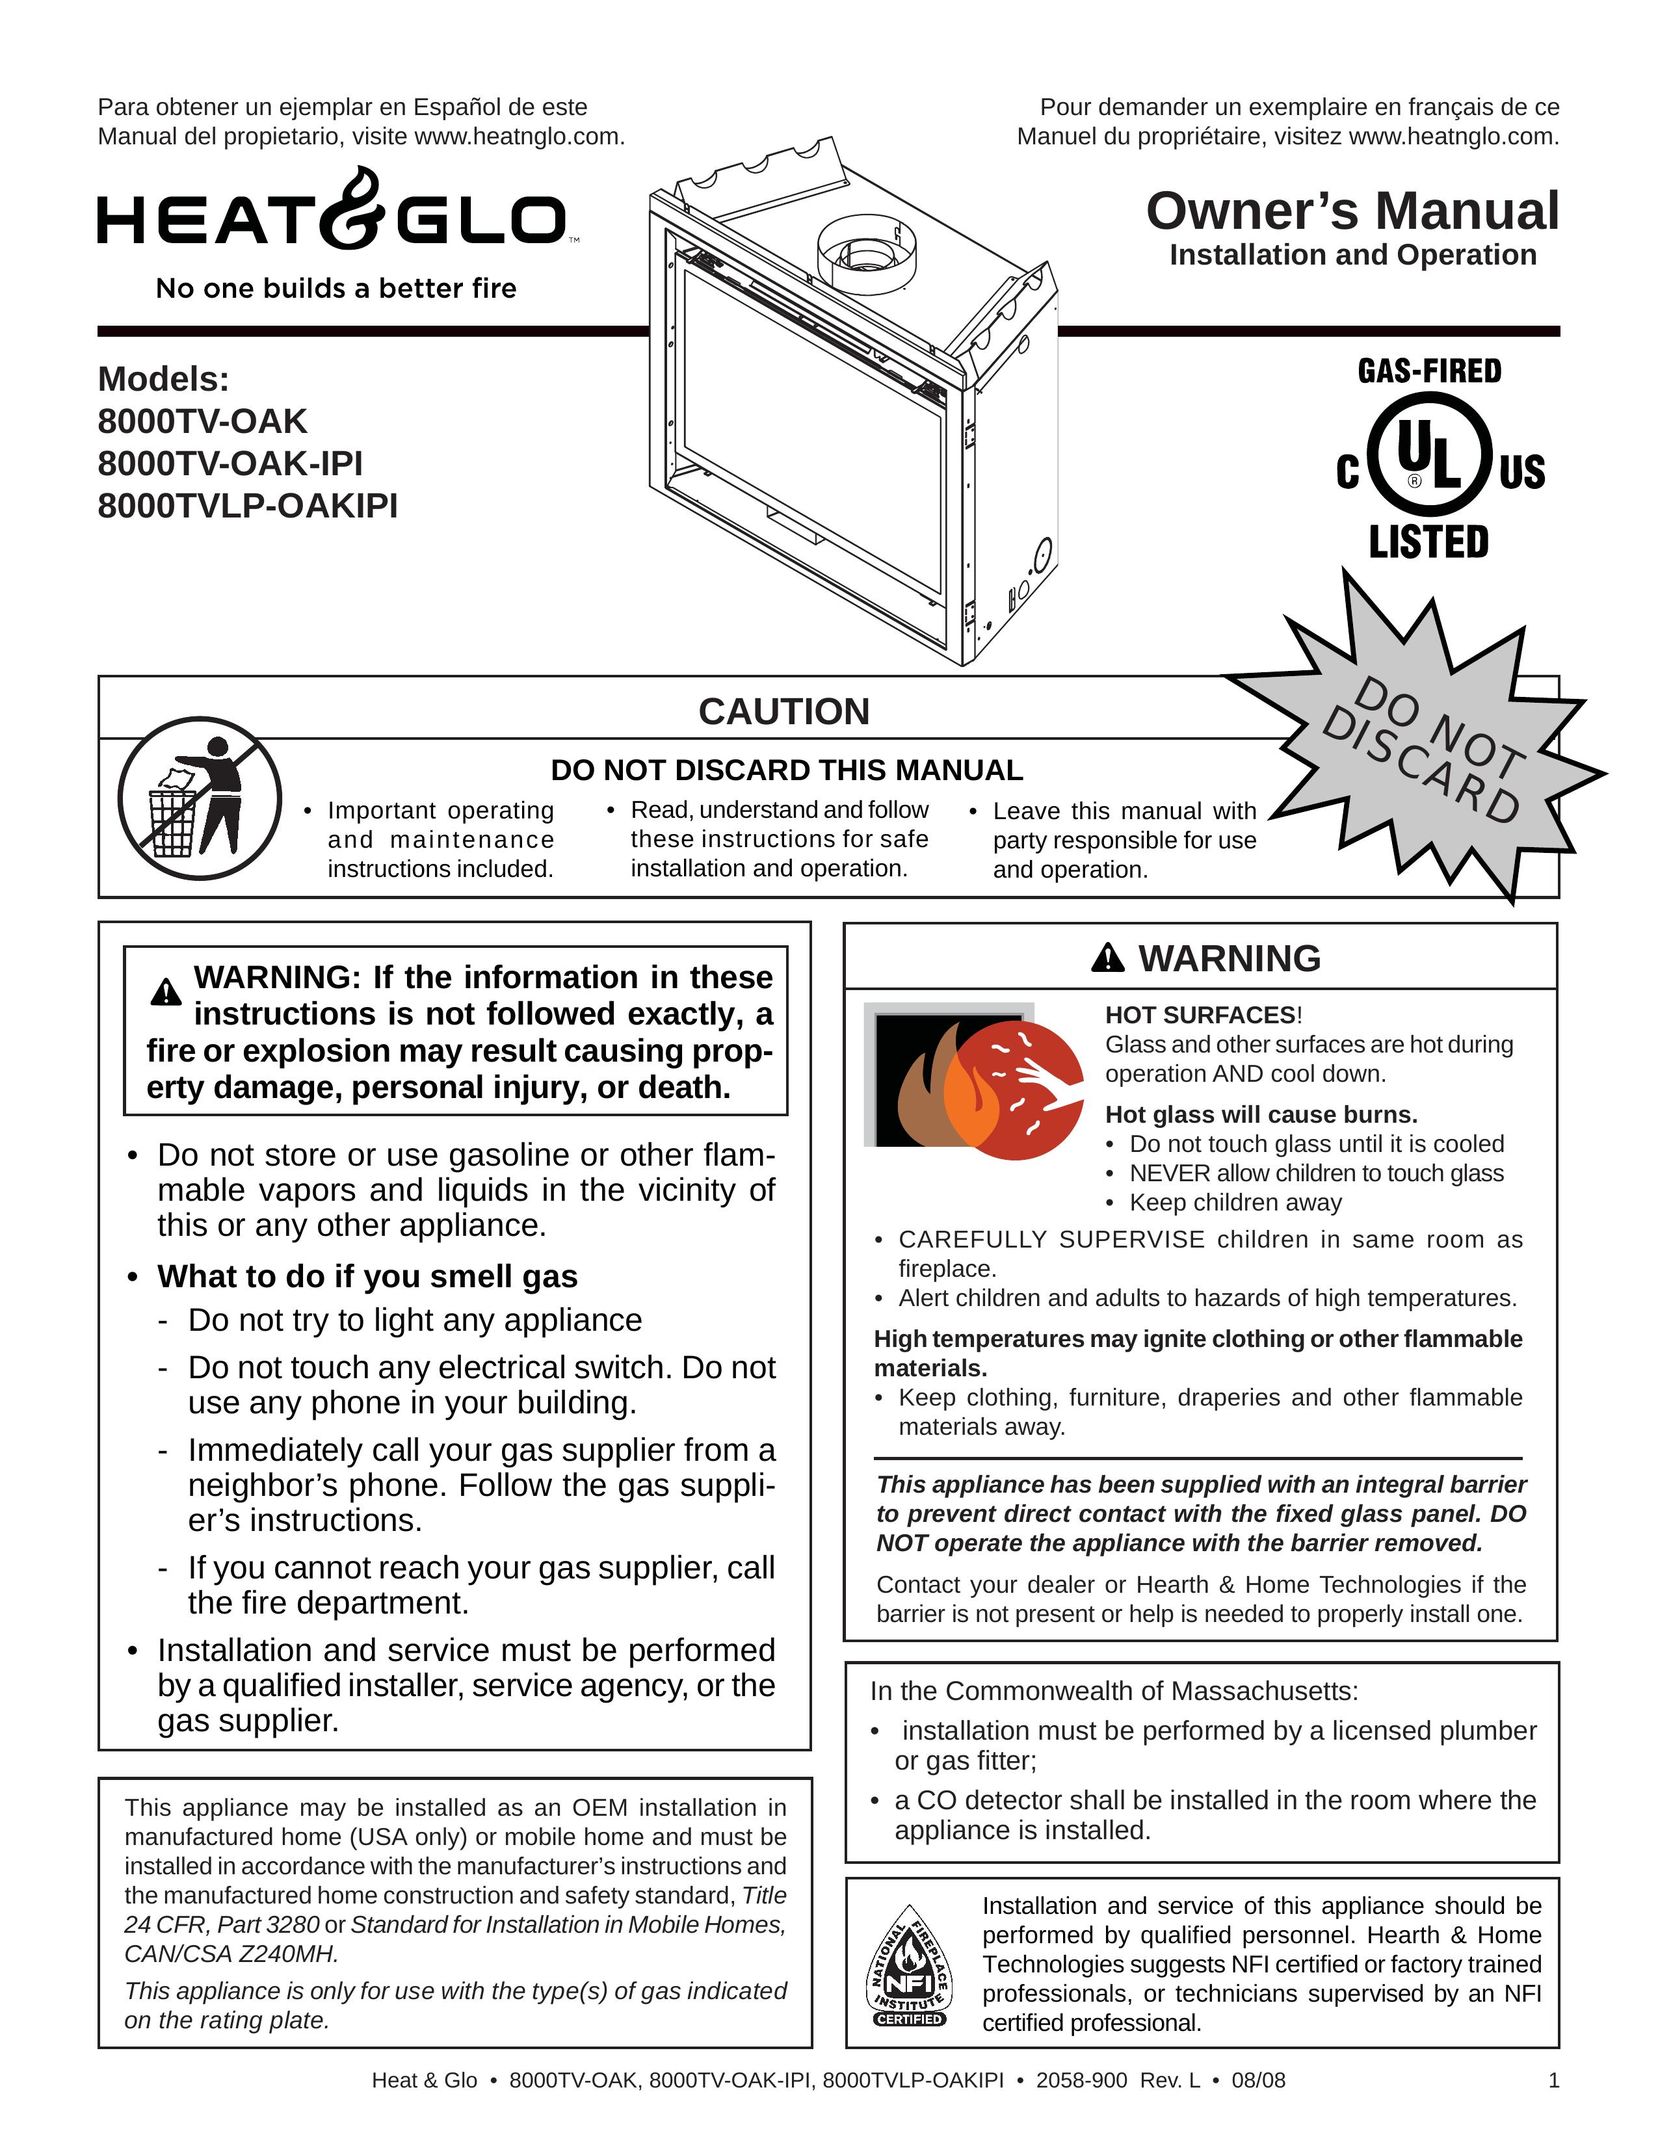 Heat & Glo LifeStyle 8000TV-OAK Gas Heater User Manual